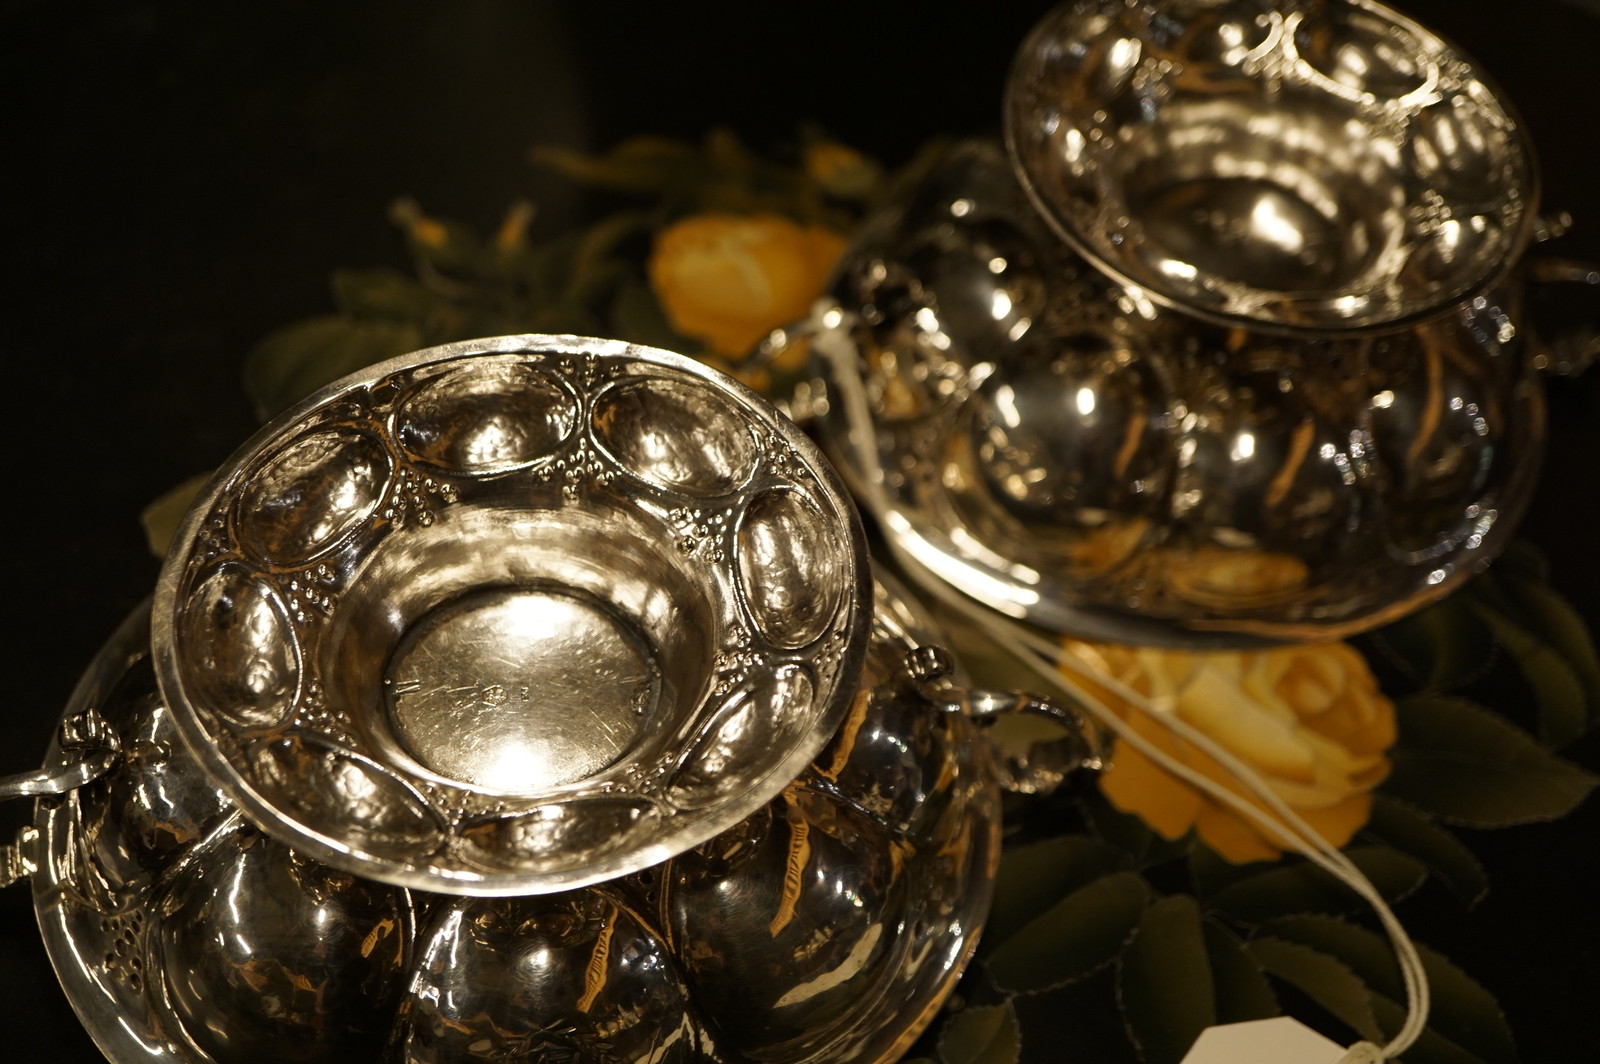 Pair of Dutch silver bowls